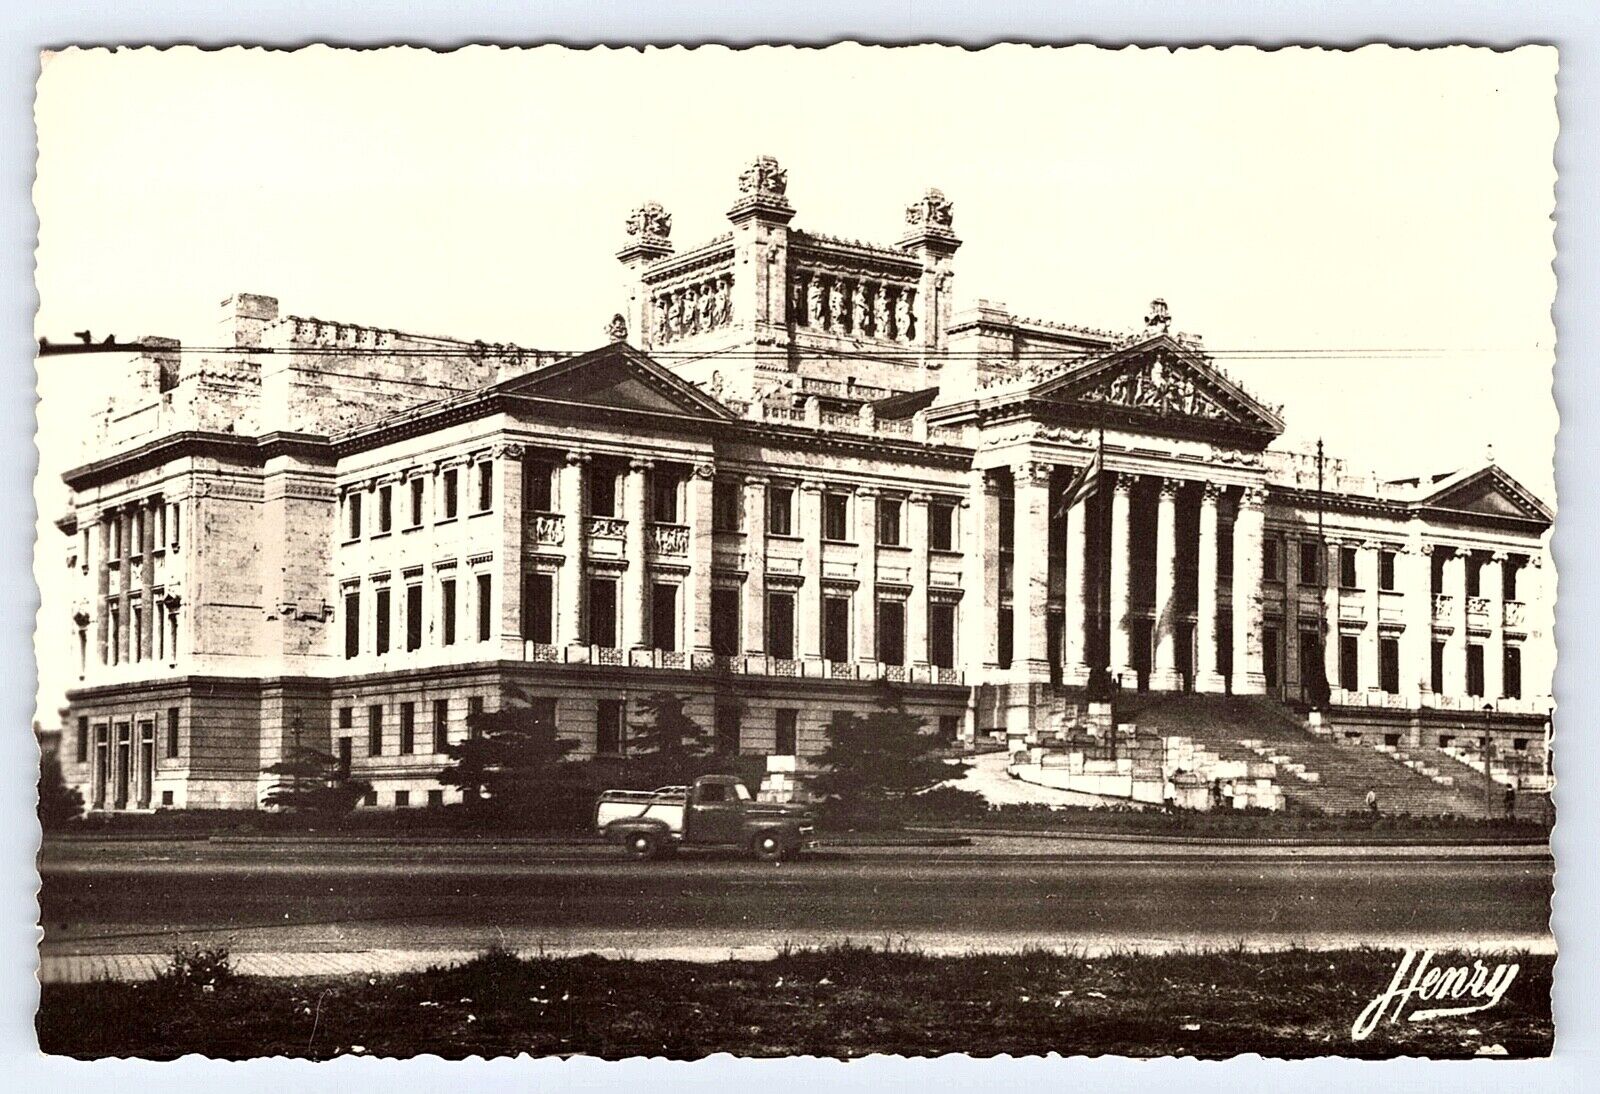 Vintage Uruguay - El Palacio Legislativo (The Legislative Palace) c1976